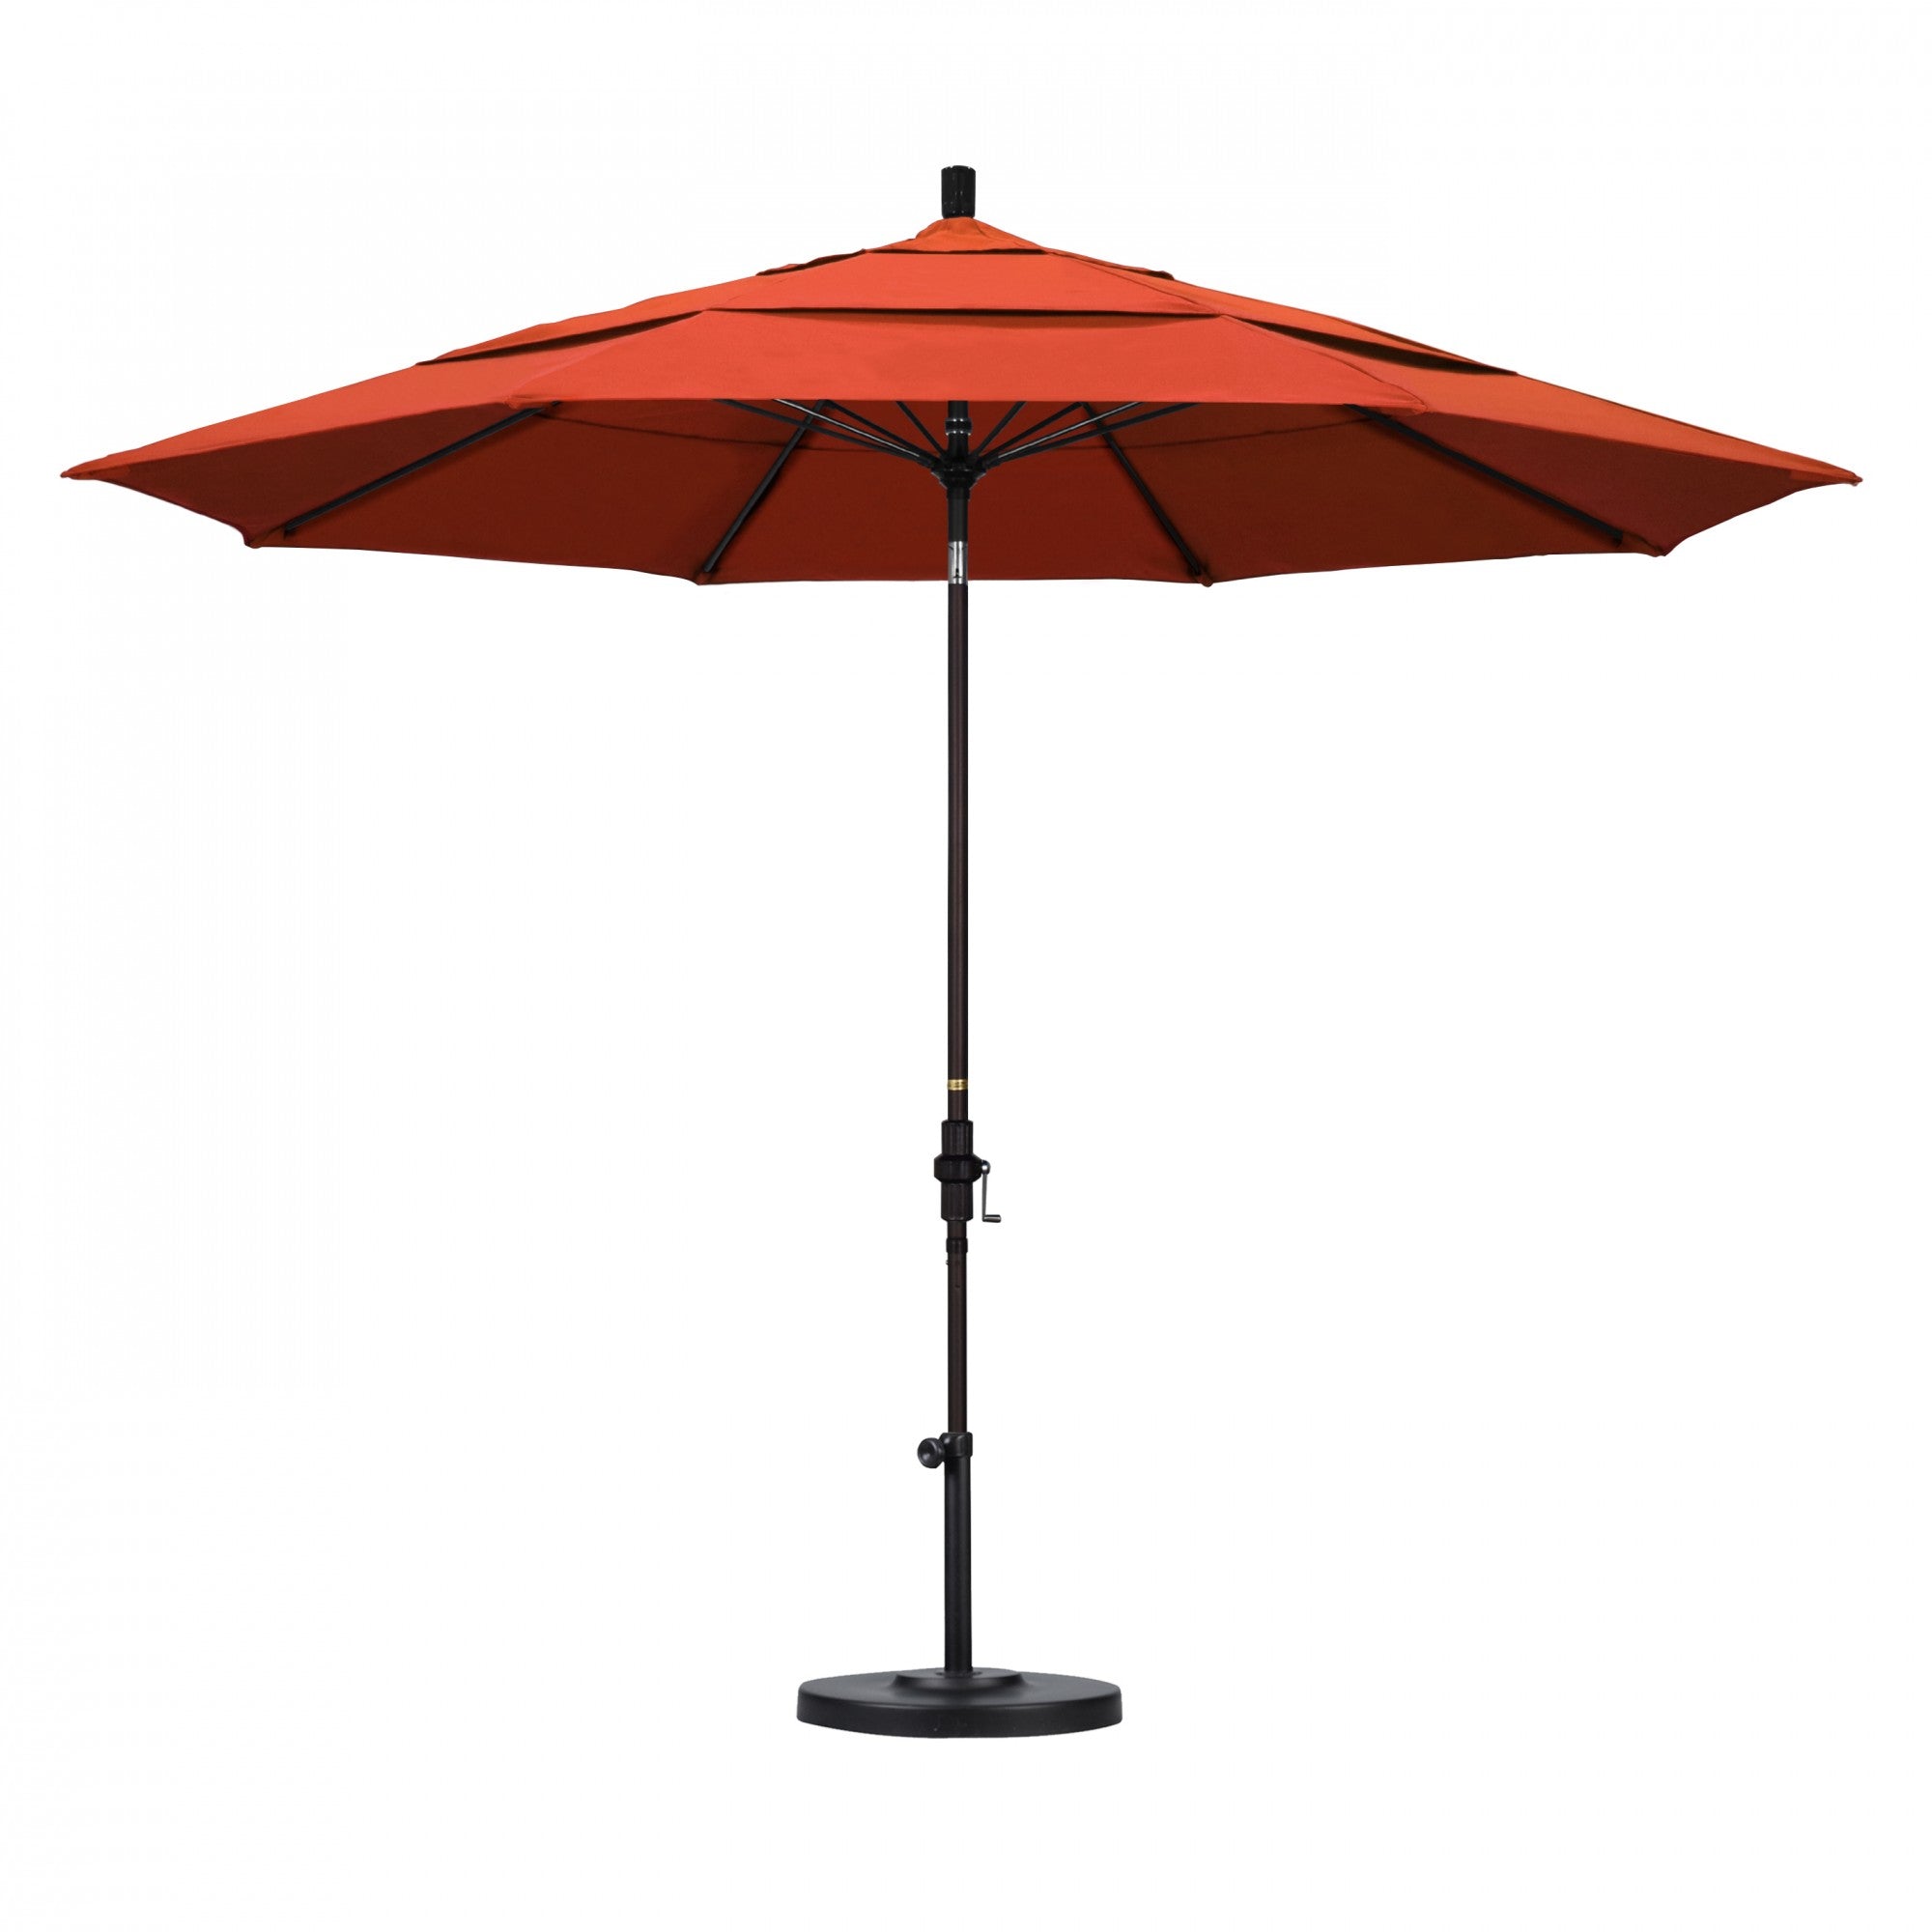 California Umbrella - 11' - Patio Umbrella Umbrella - Aluminum Pole - Sunset - Olefin - GSCUF118117-F27-DWV